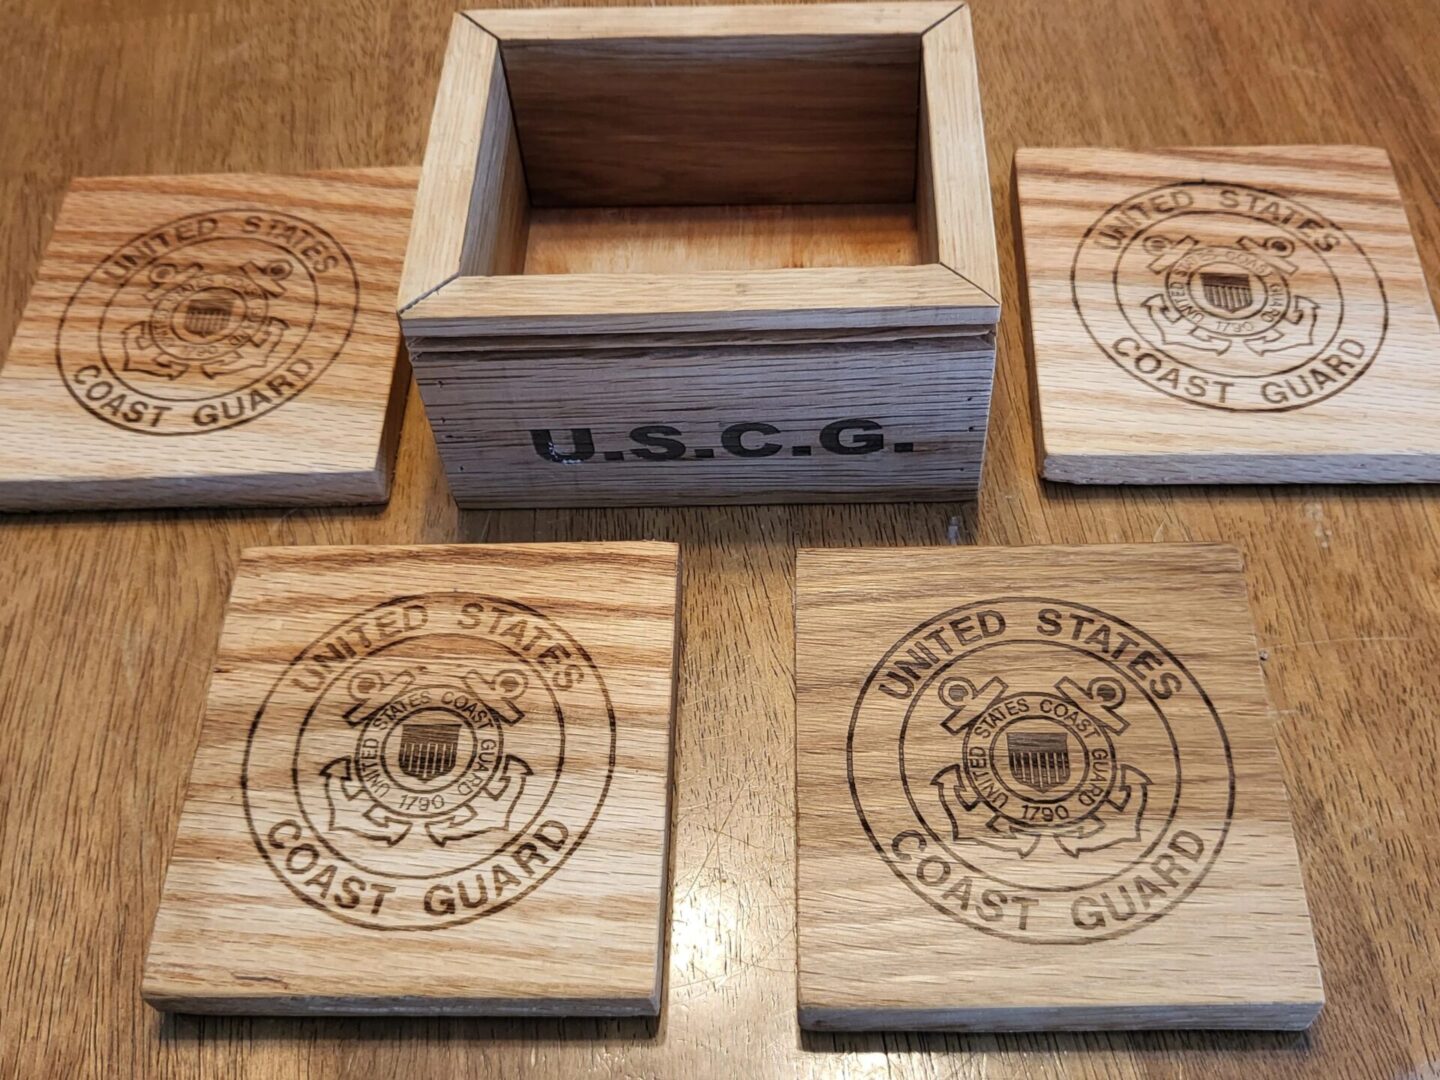 US Coast Guard wooden plates